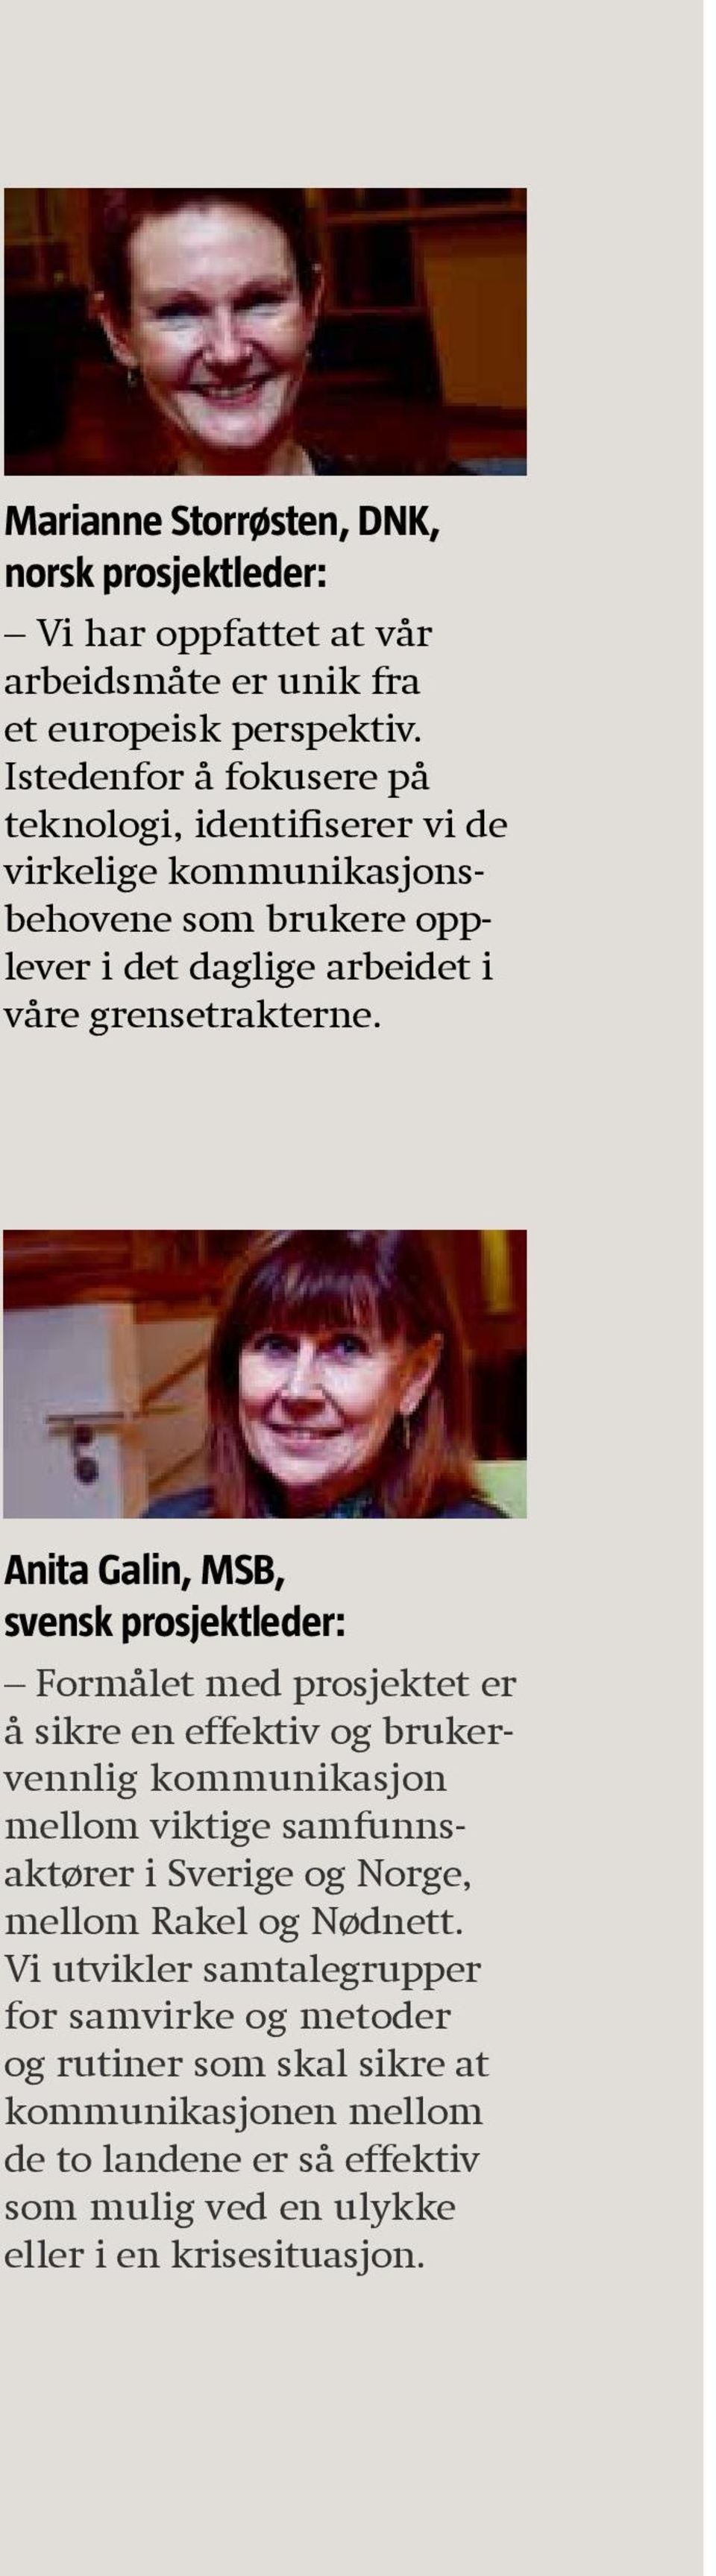 Anita Galin, MSB, svensk prosjektleder: Formålet med prosjektet er å sikre en effektiv og brukervennlig kommunikasjon mellom viktige samfunnsaktører i Sverige og